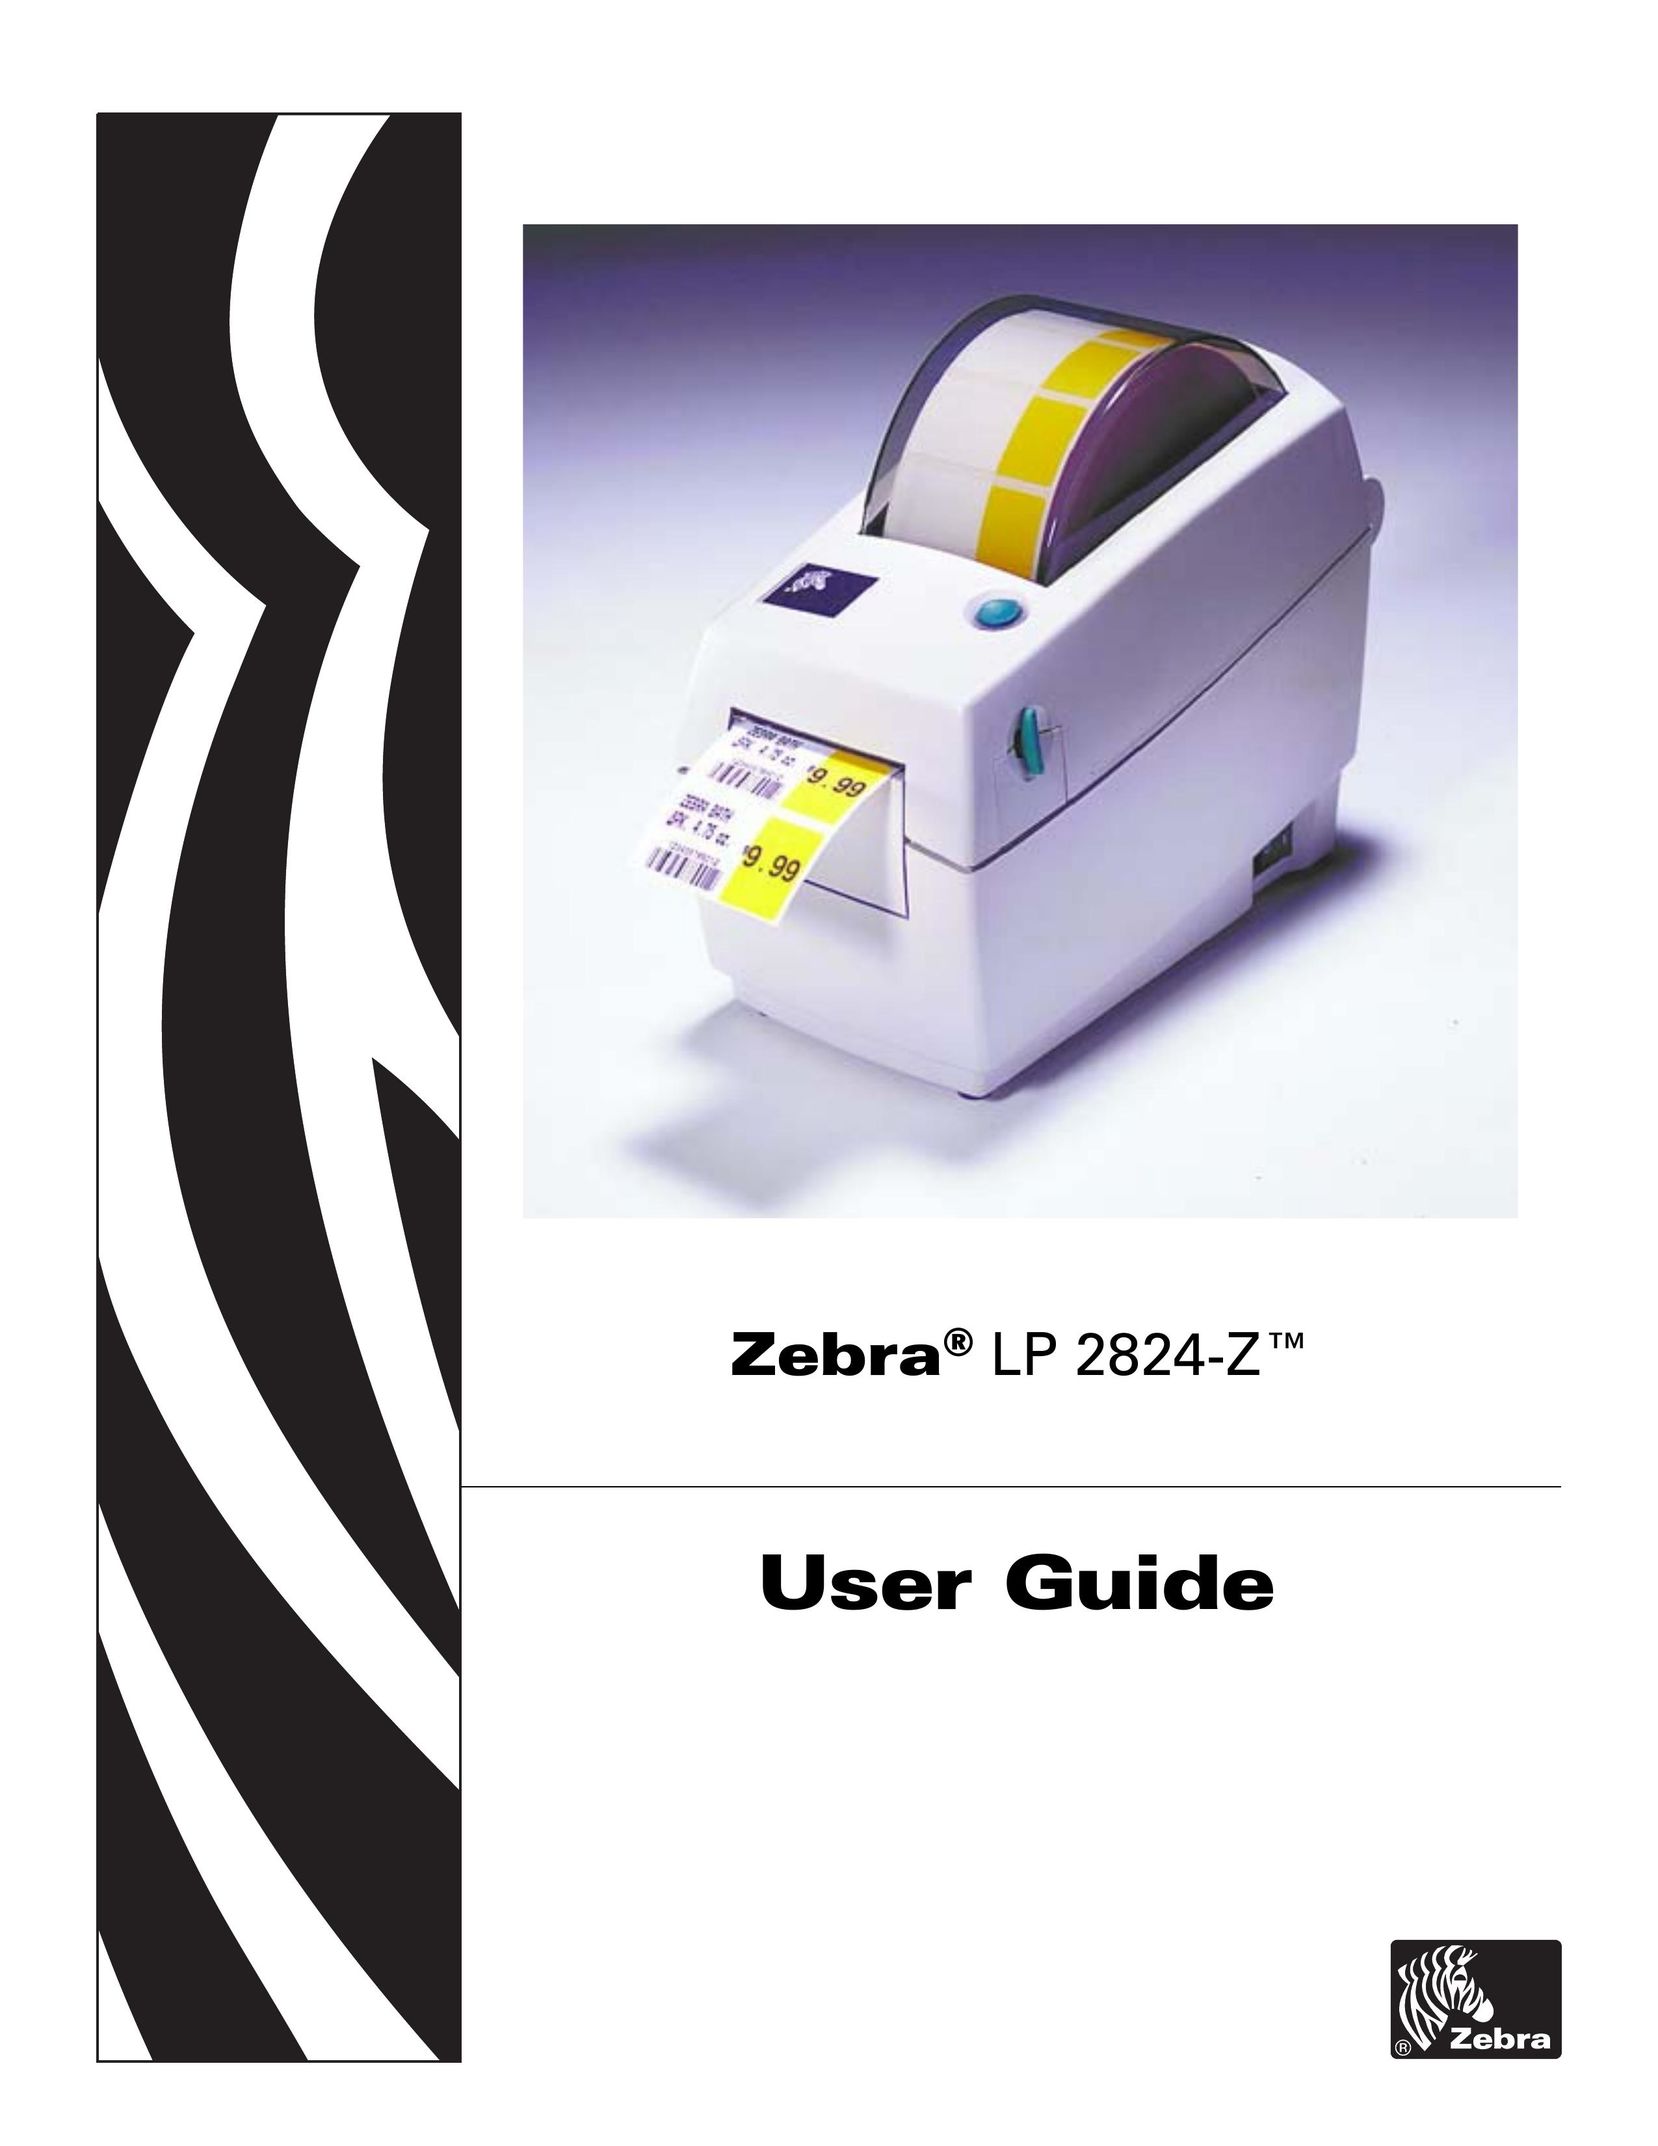 Zebra Technologies 2824-Z Printer User Manual